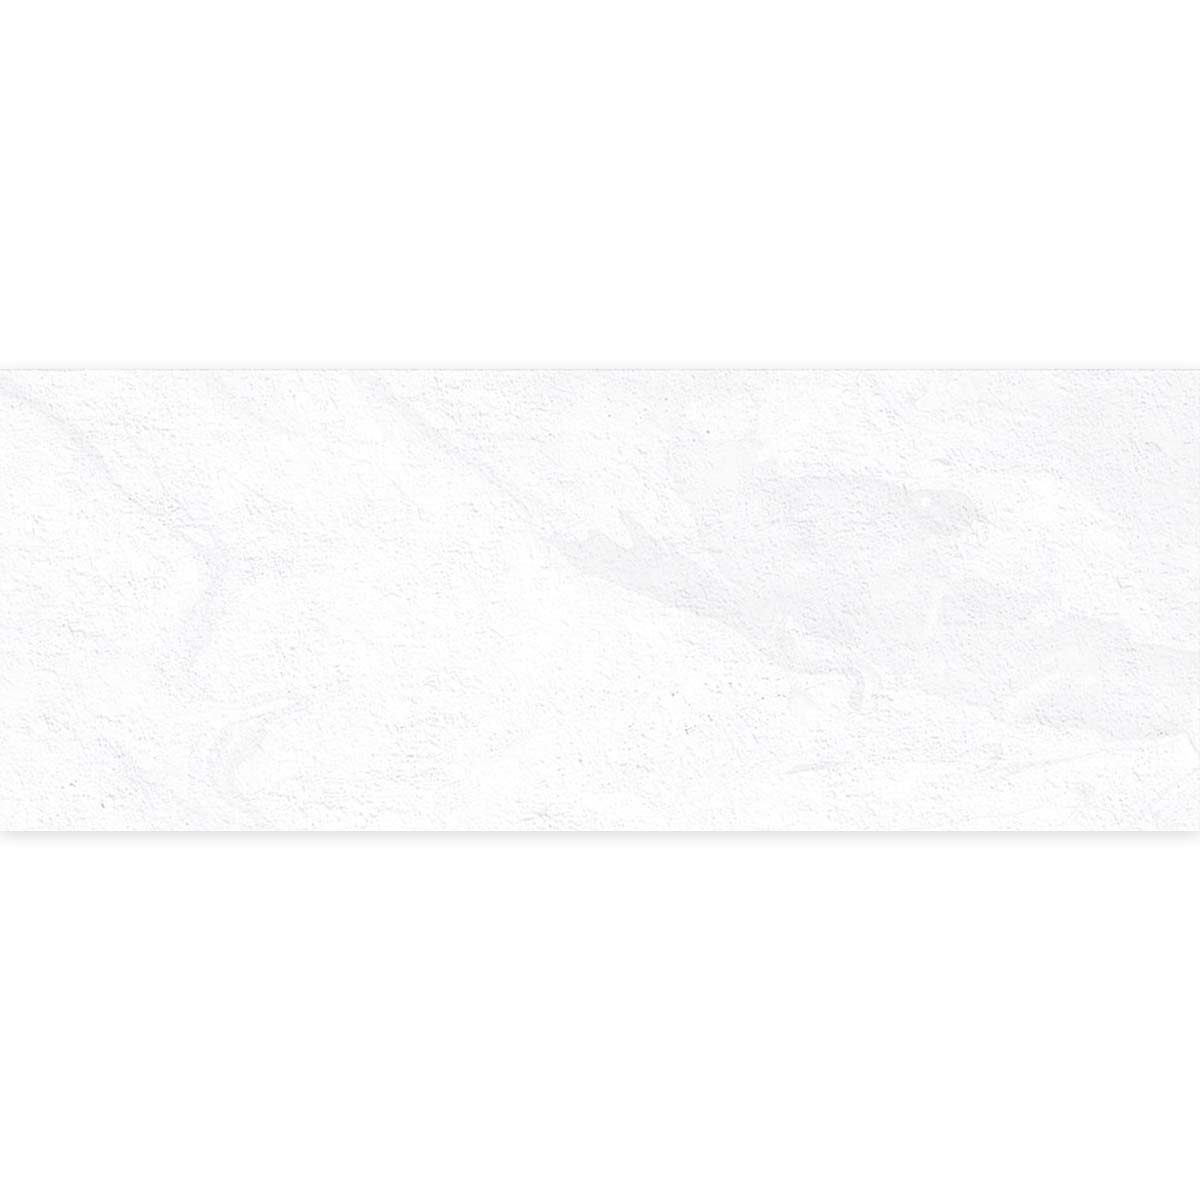 Vives Stravaganza Blanco Stone Effect White Body Decor Wall Tile 45x120cm Matt